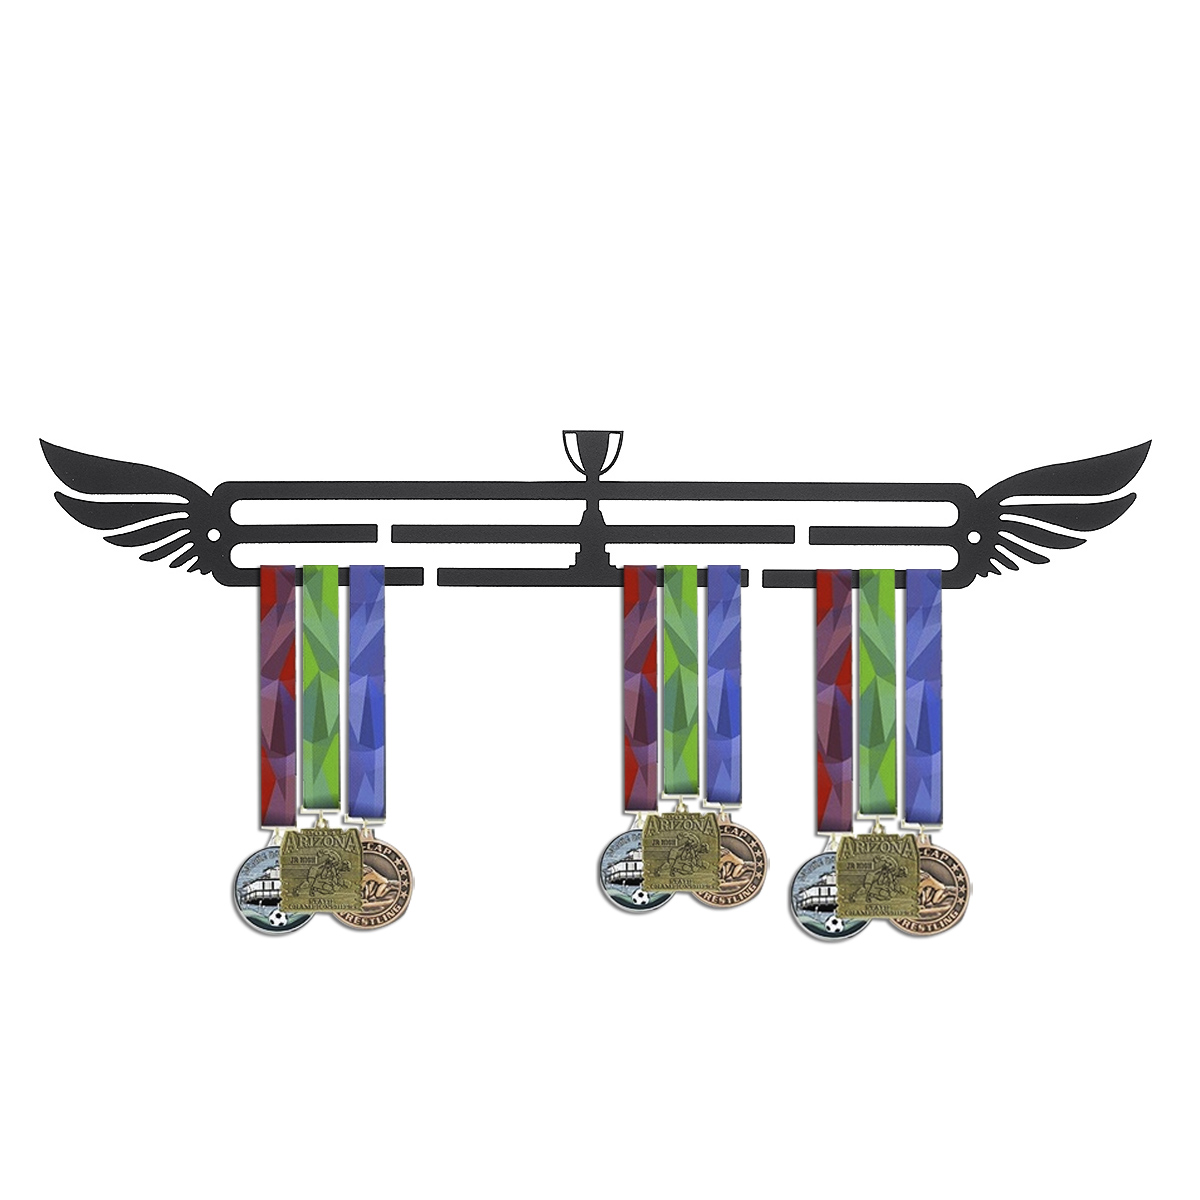 Sport-Medal-Hanger-Medal-Display-Rack-For-Running-Gymnastics-Medals-Display-Rack-Decorations-1560487-4